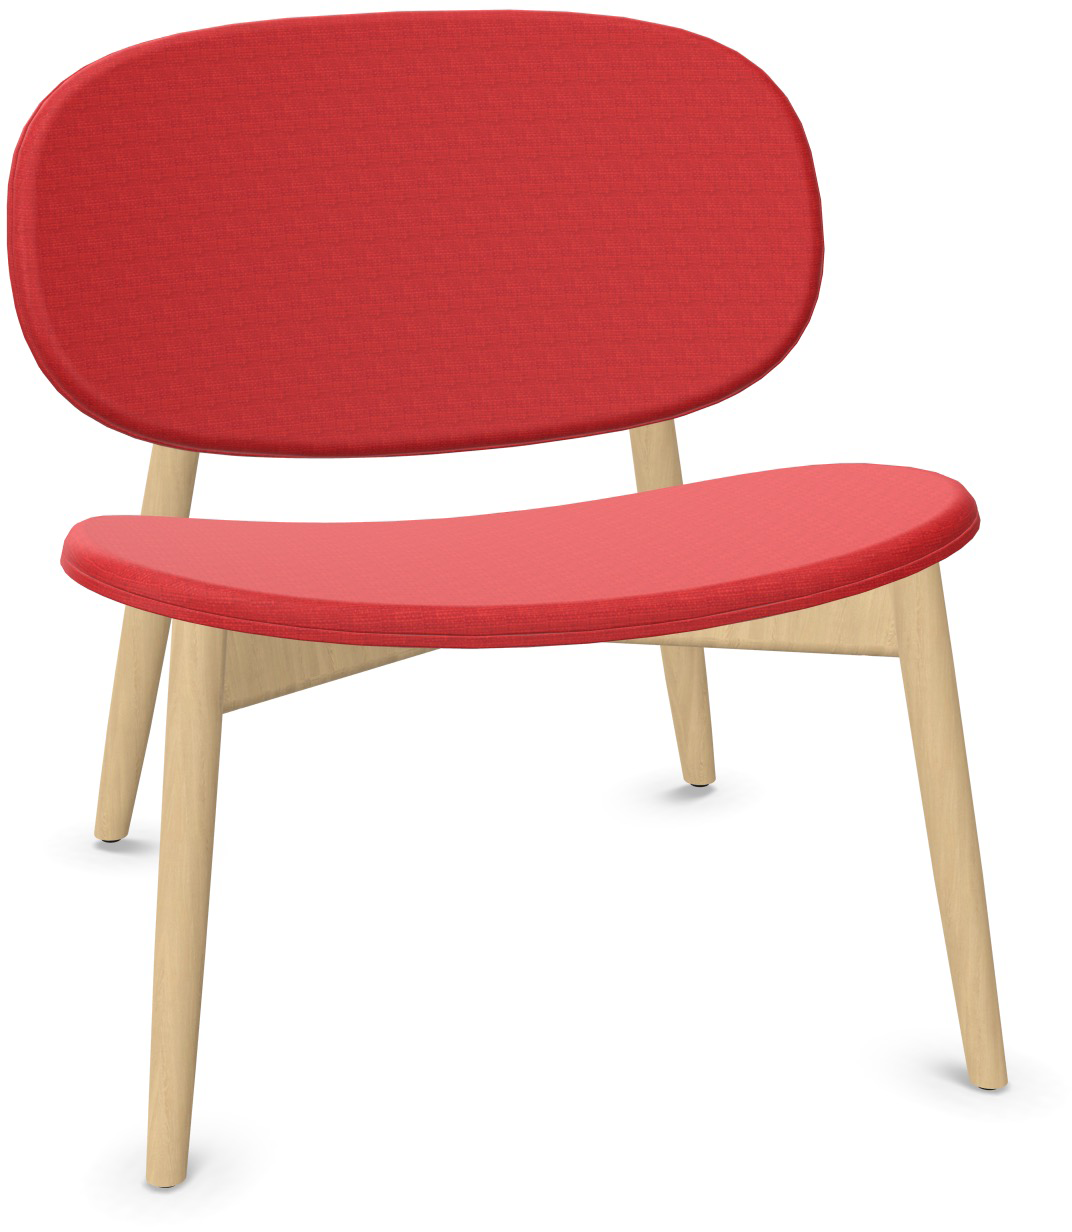 HARMO Relaxsessel in Rot präsentiert im Onlineshop von KAQTU Design AG. Sessel ist von Infiniti Design